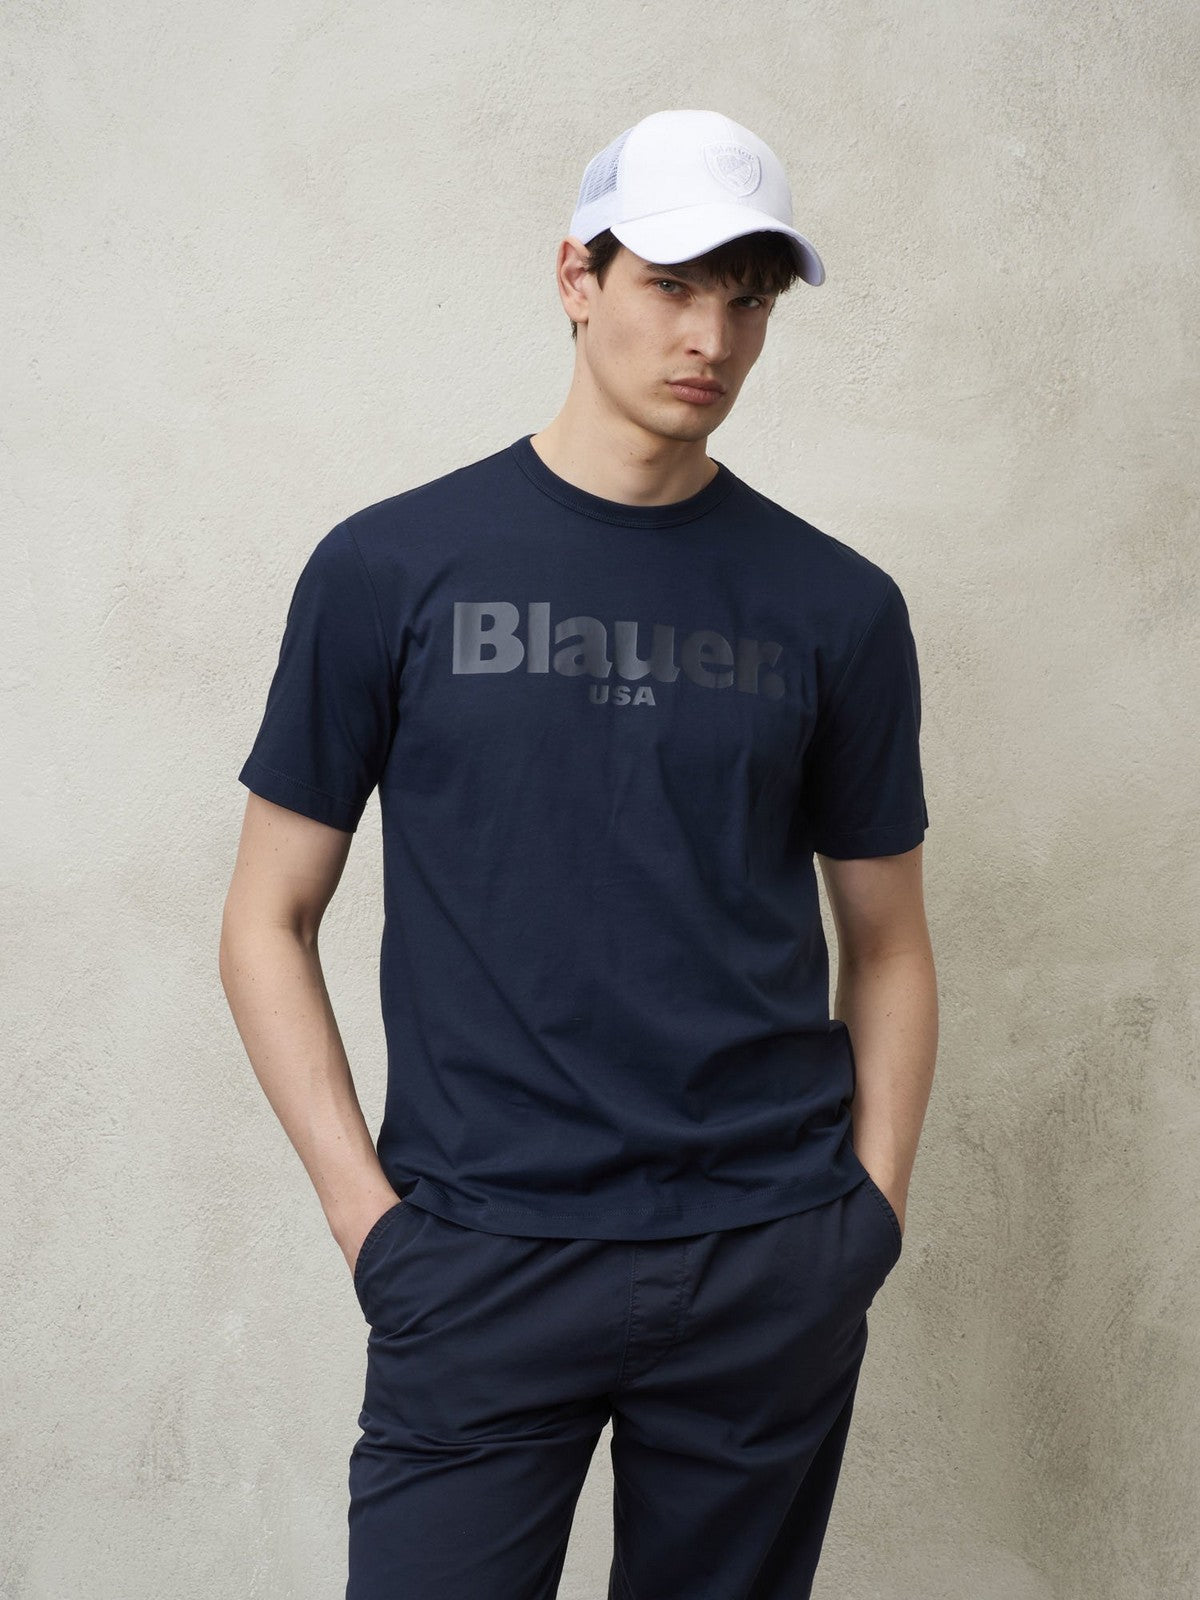 BLAUER T-Shirt e Polo Uomo  24SBLUH02142 004547 888 Blu